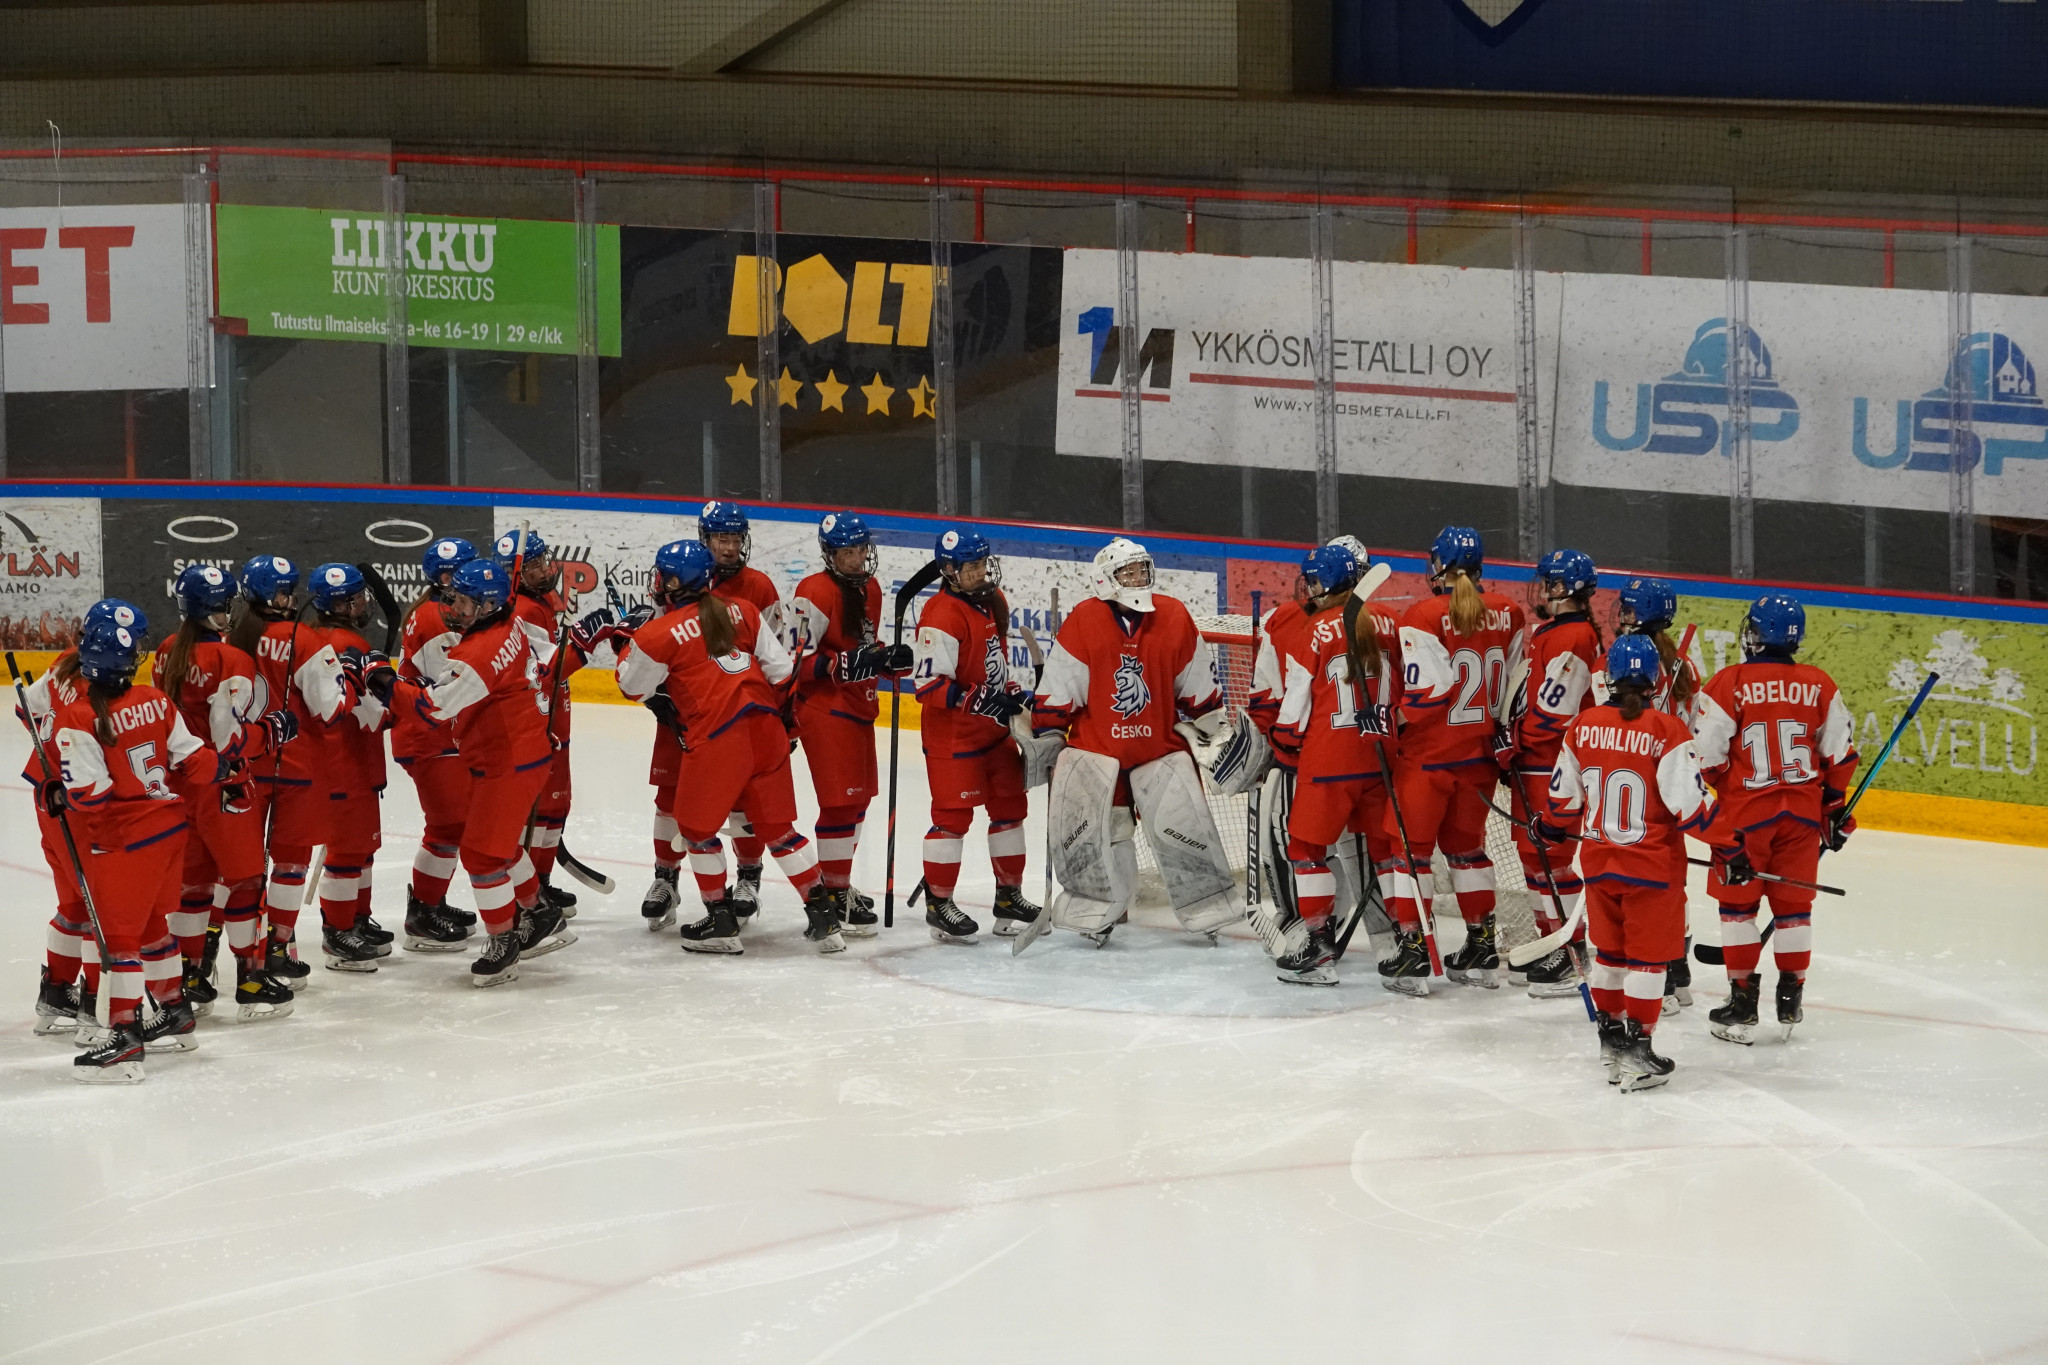 Česká republika vyhrála na penalty a získala zlato v ledním hokeji žen na zimním EYOF